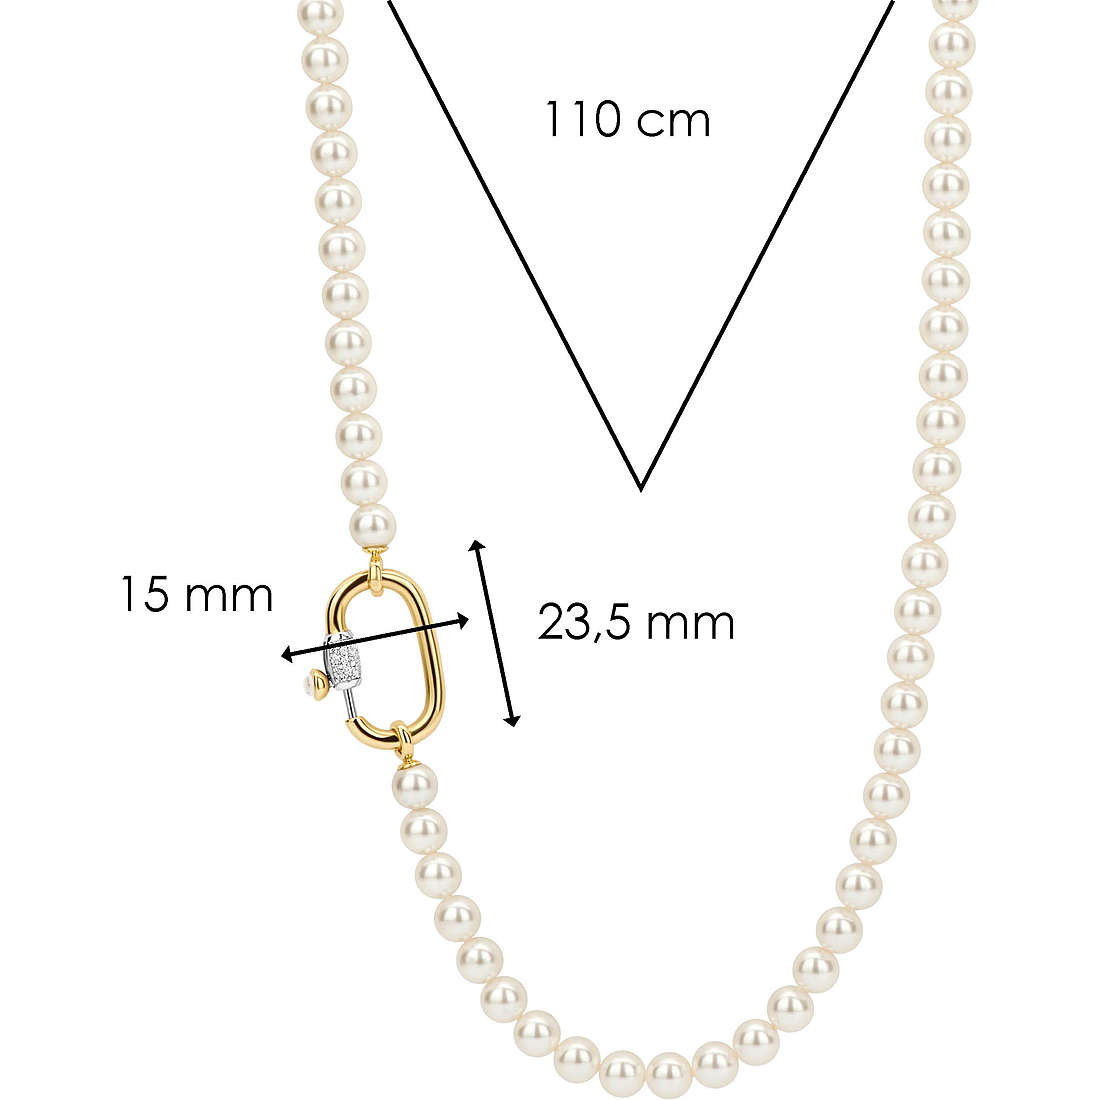 Halskette mit Perlen TI SENTO MILANO für frau 3993PW/110